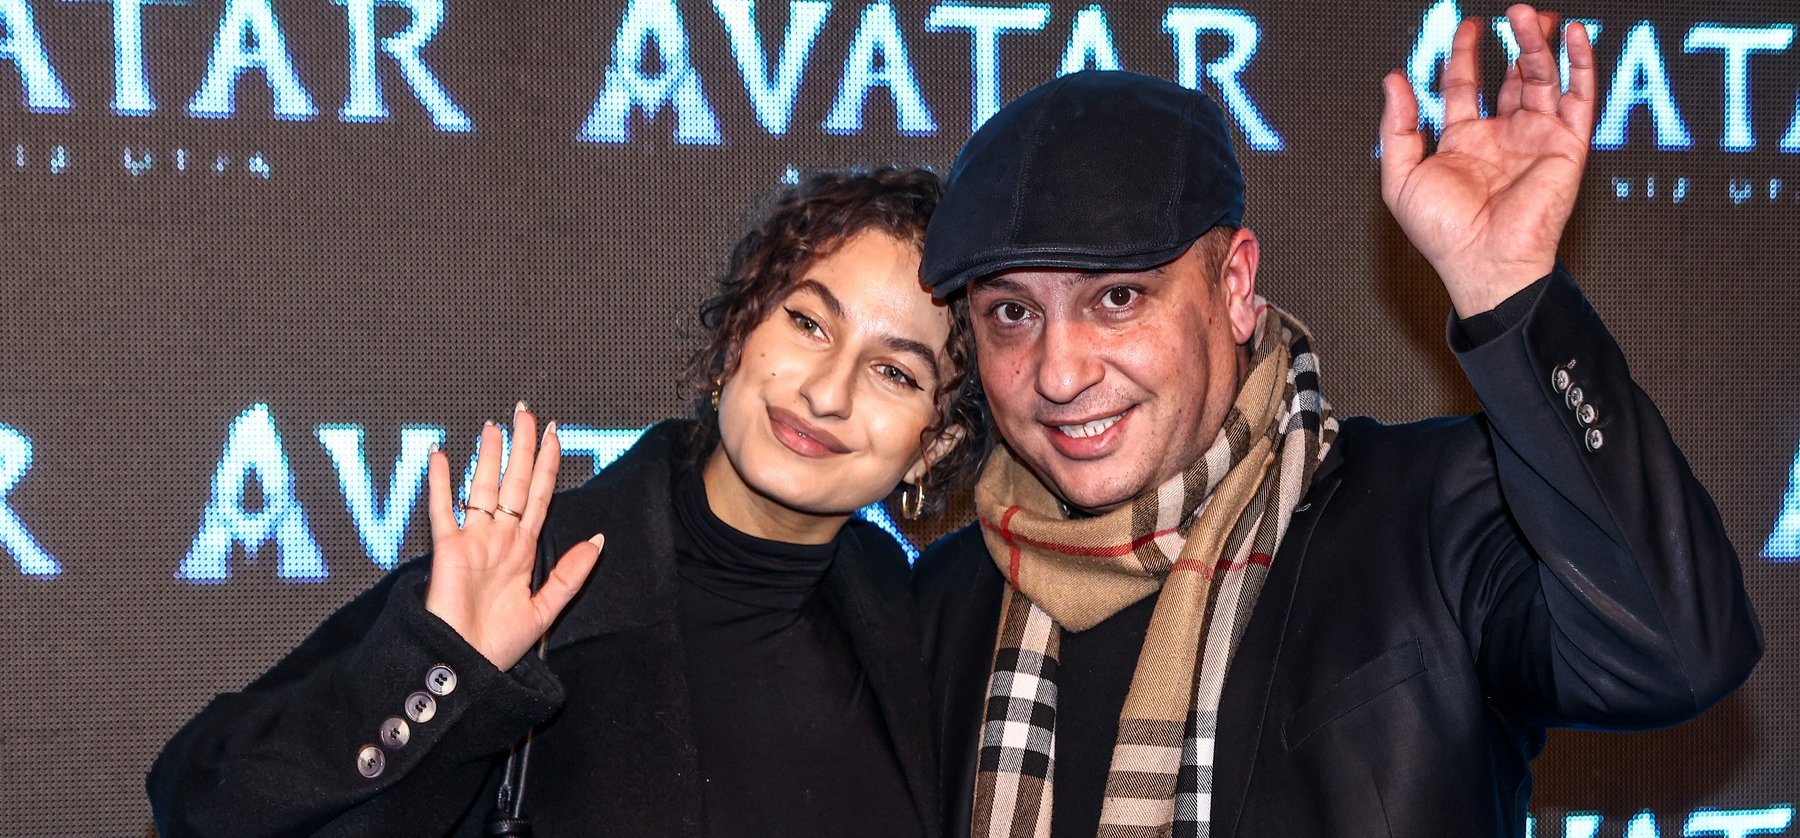 Csókcsata az Avatar folytatásának budapesti premierjén, még L.L. Junior is elvitte az új párját